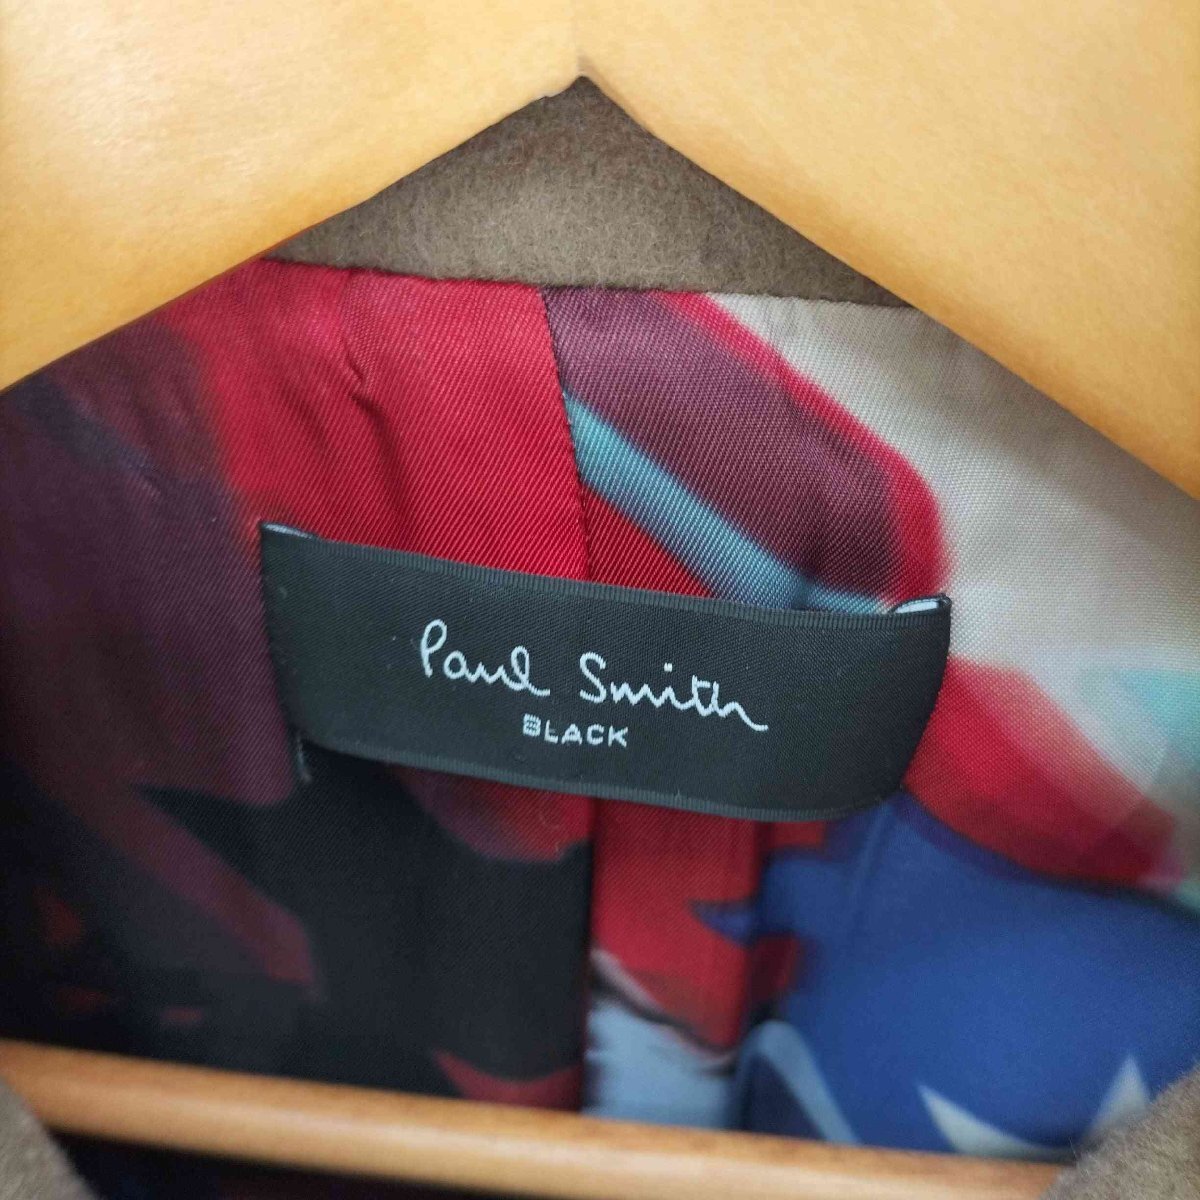 Paul Smith BLACK( Paul Smith черный ) подкладка общий рисунок воротник-стойка пальто женский EUR б/у б/у одежда 0145